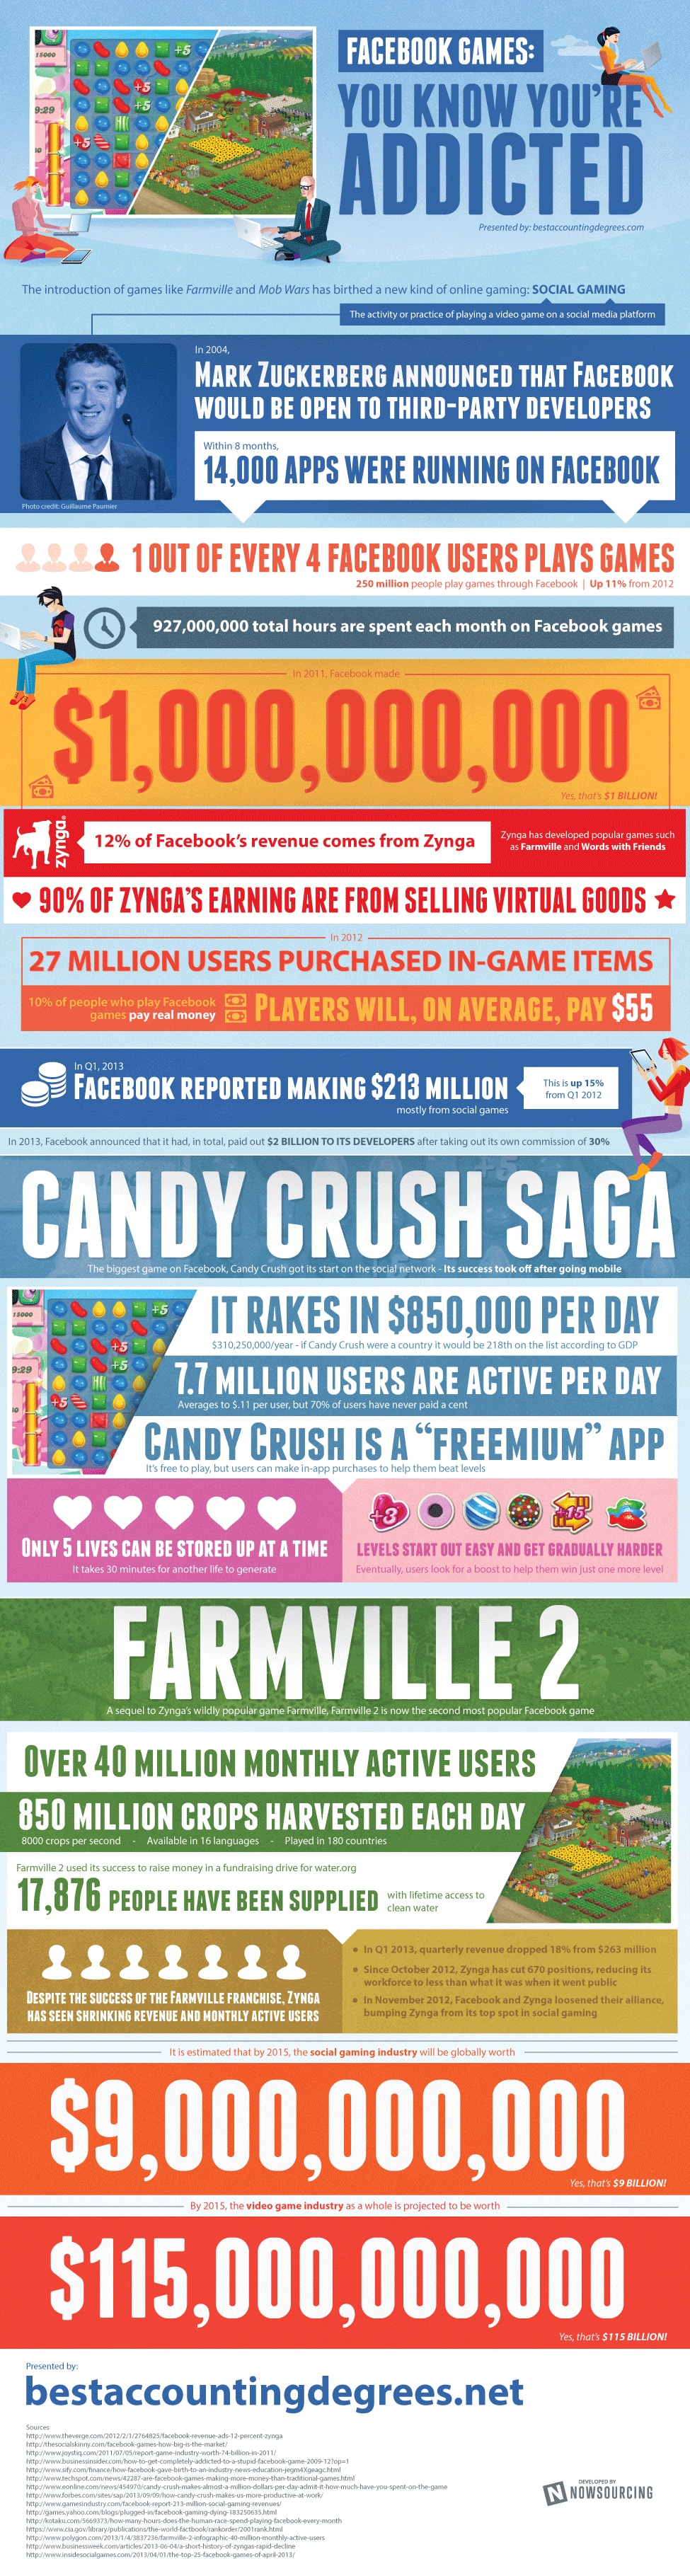 facebook-games-statistics-infographic